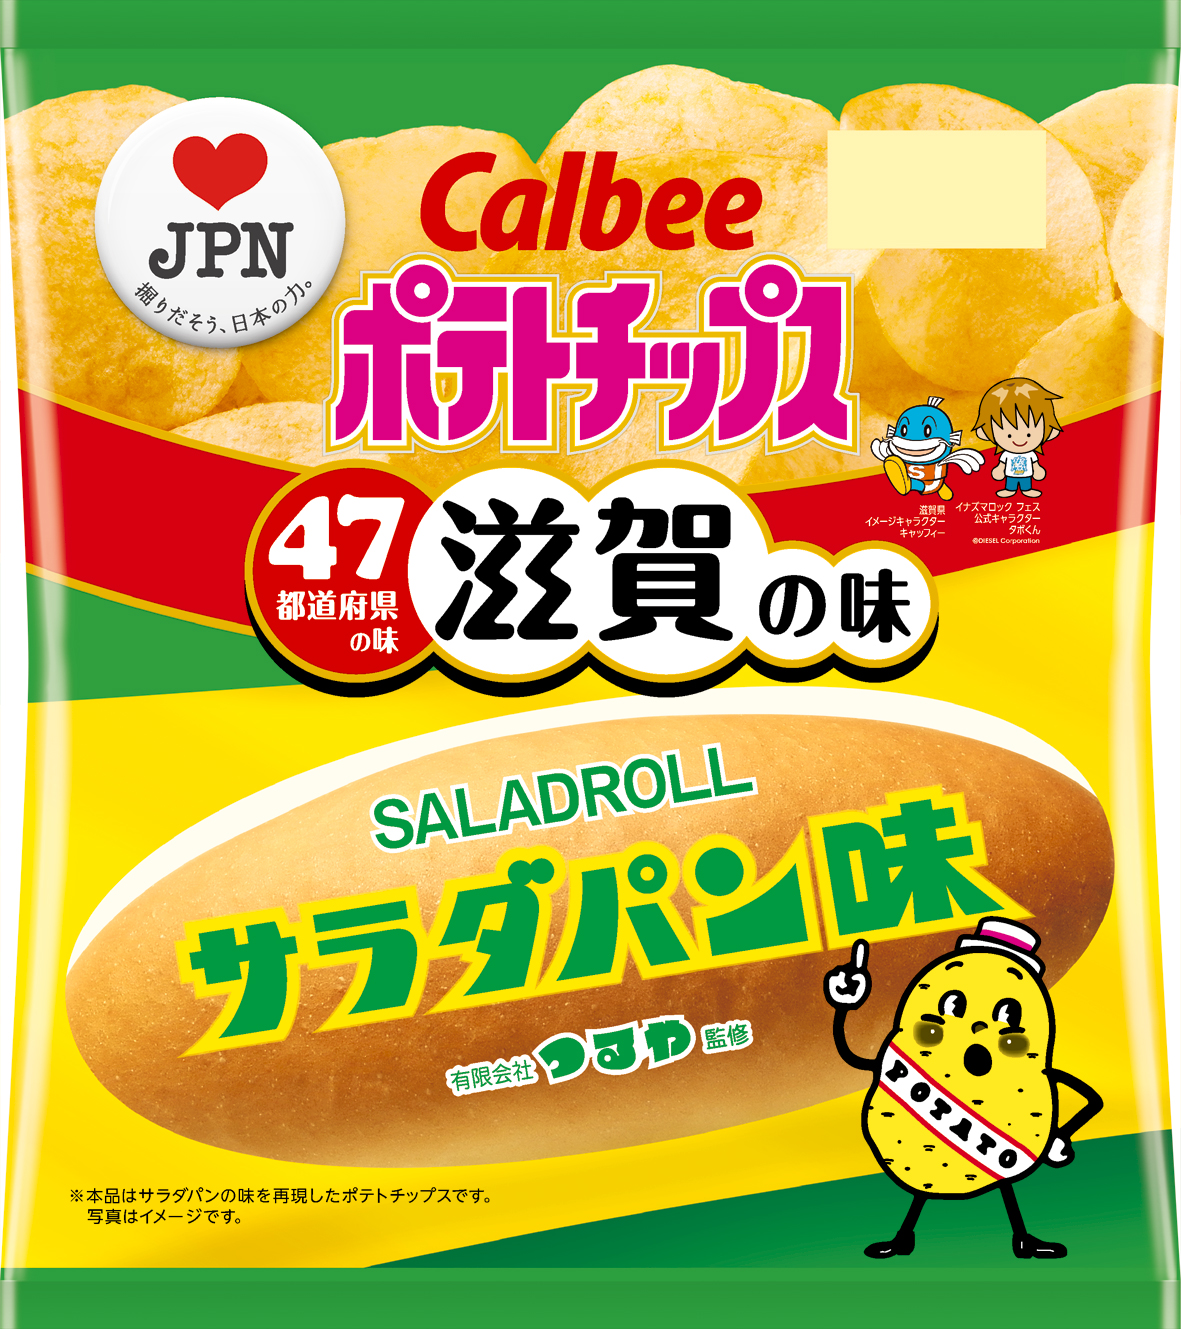 カルビーラブｊｐｎ企画 滋賀の味は ポテトチップス サラダパン味 19年9月23日 月 発売 カルビー株式会社のプレスリリース